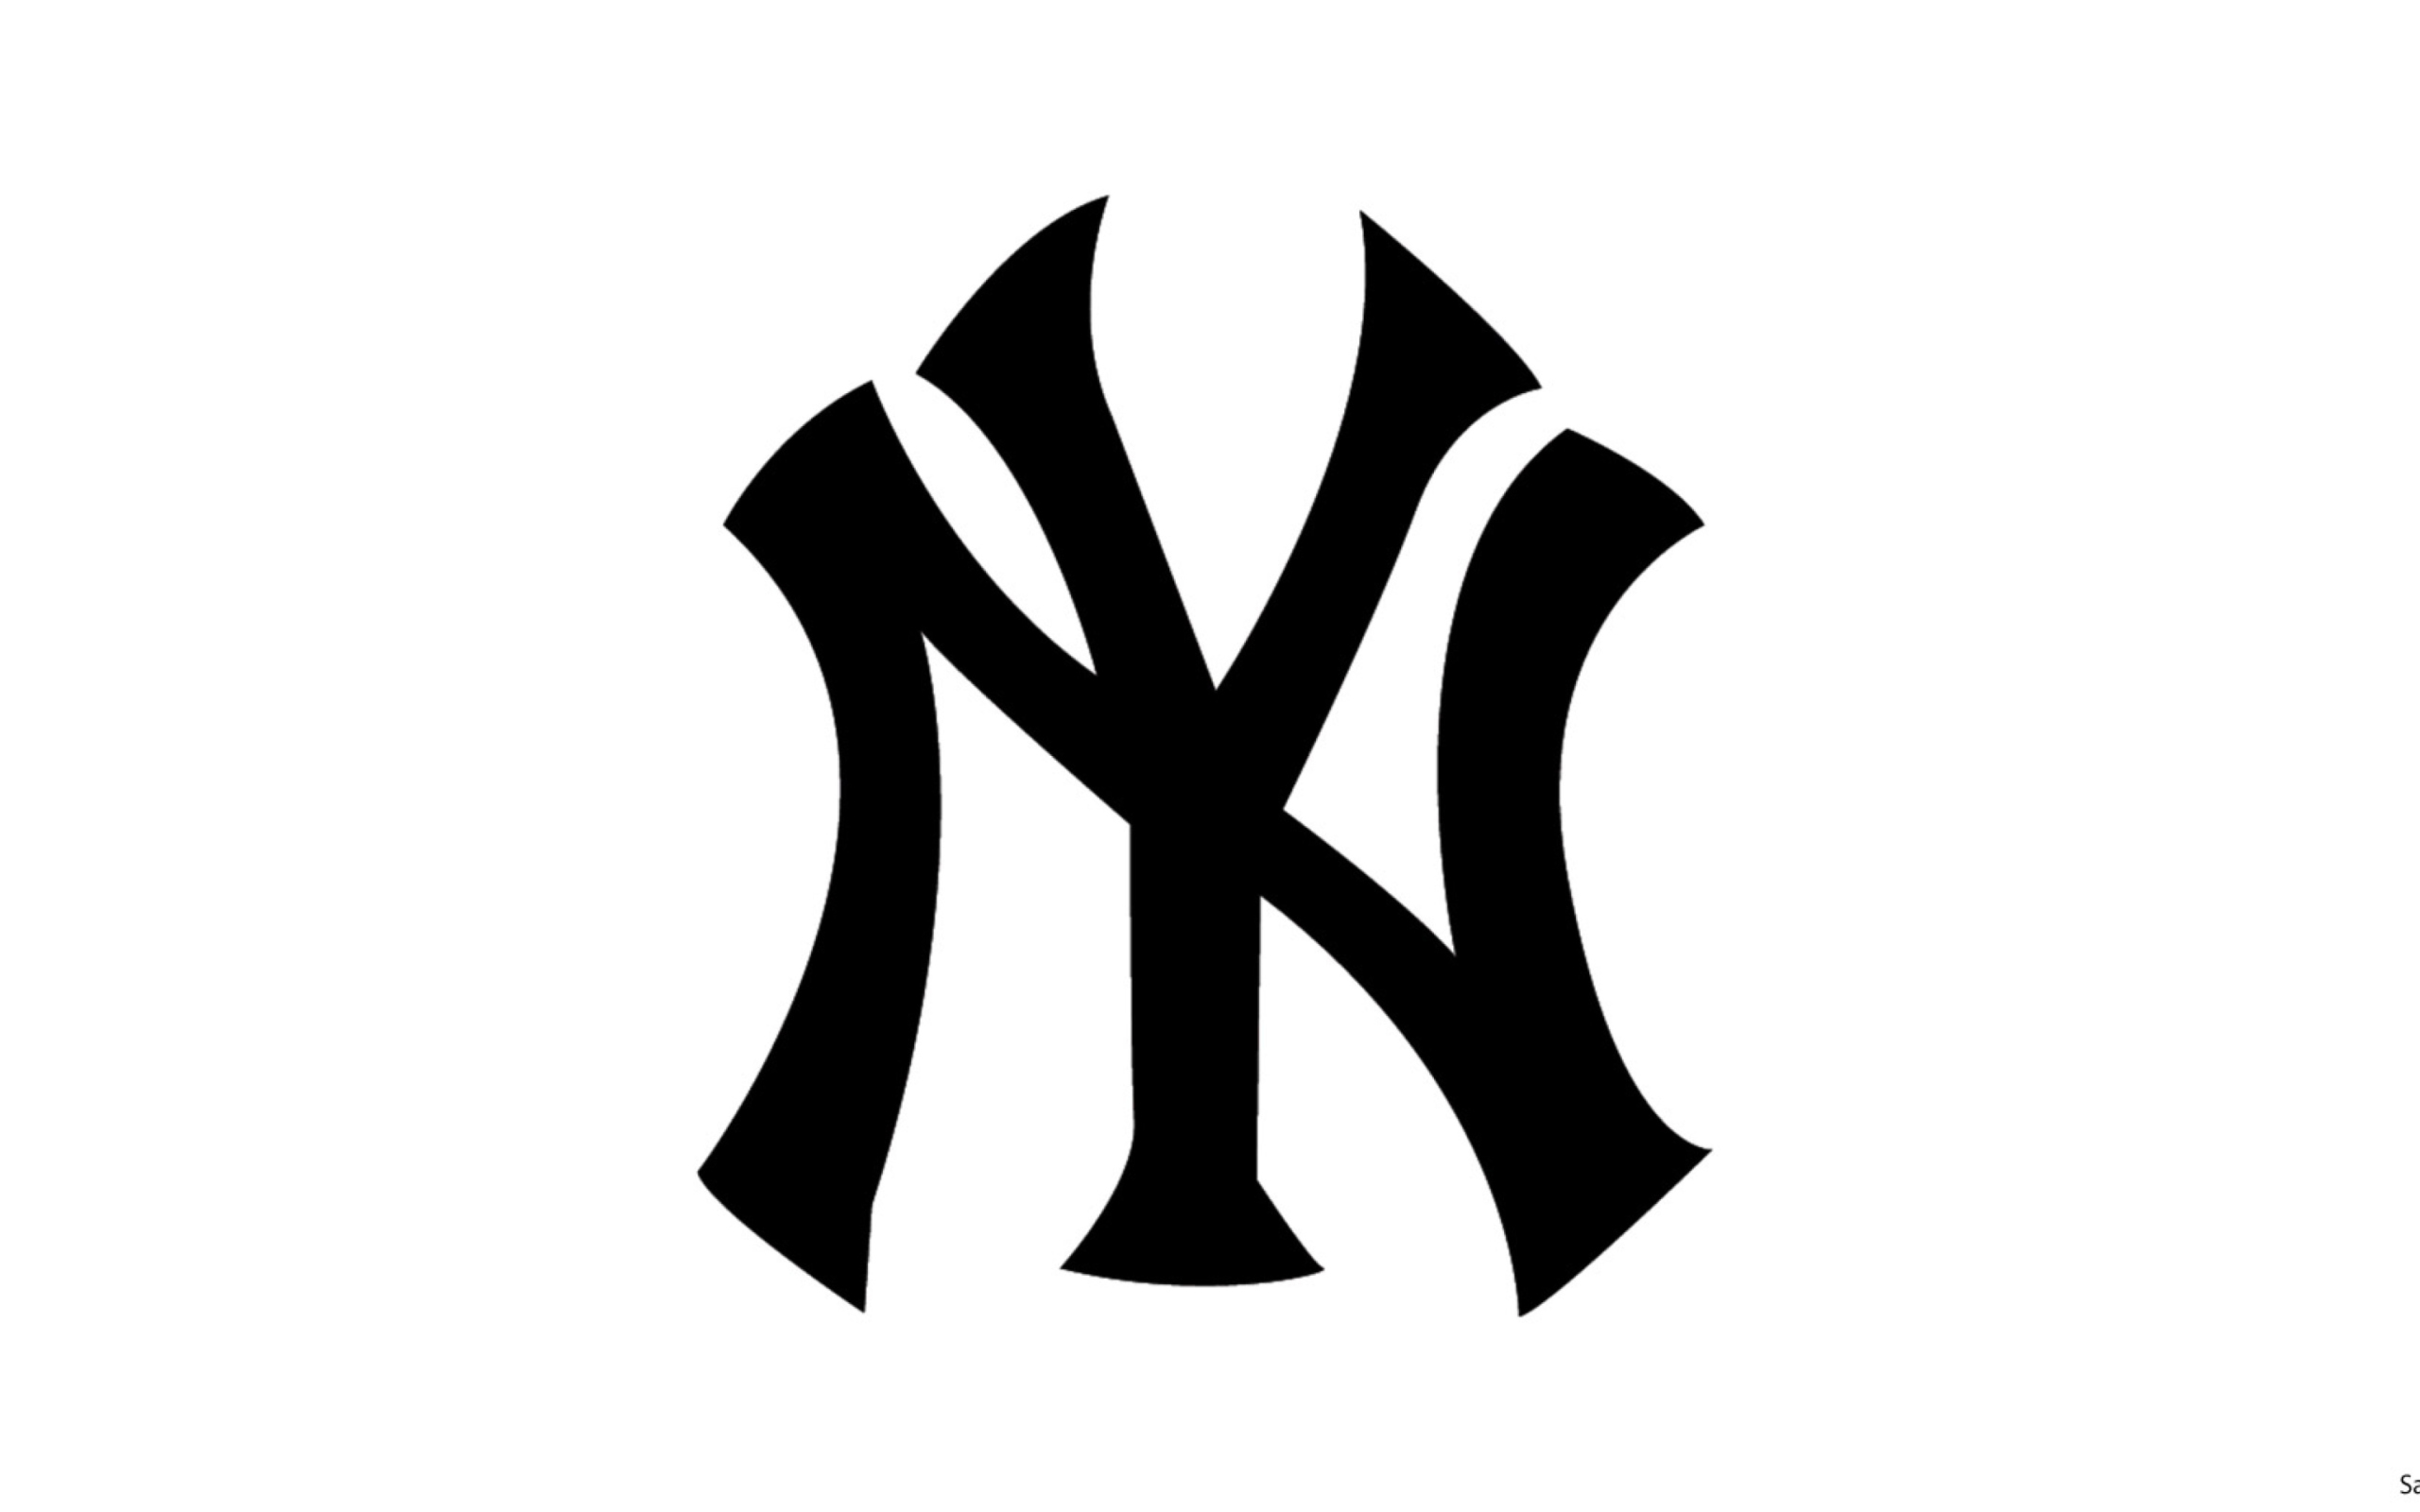 NY Logo Wallpaper for 2560x1600.